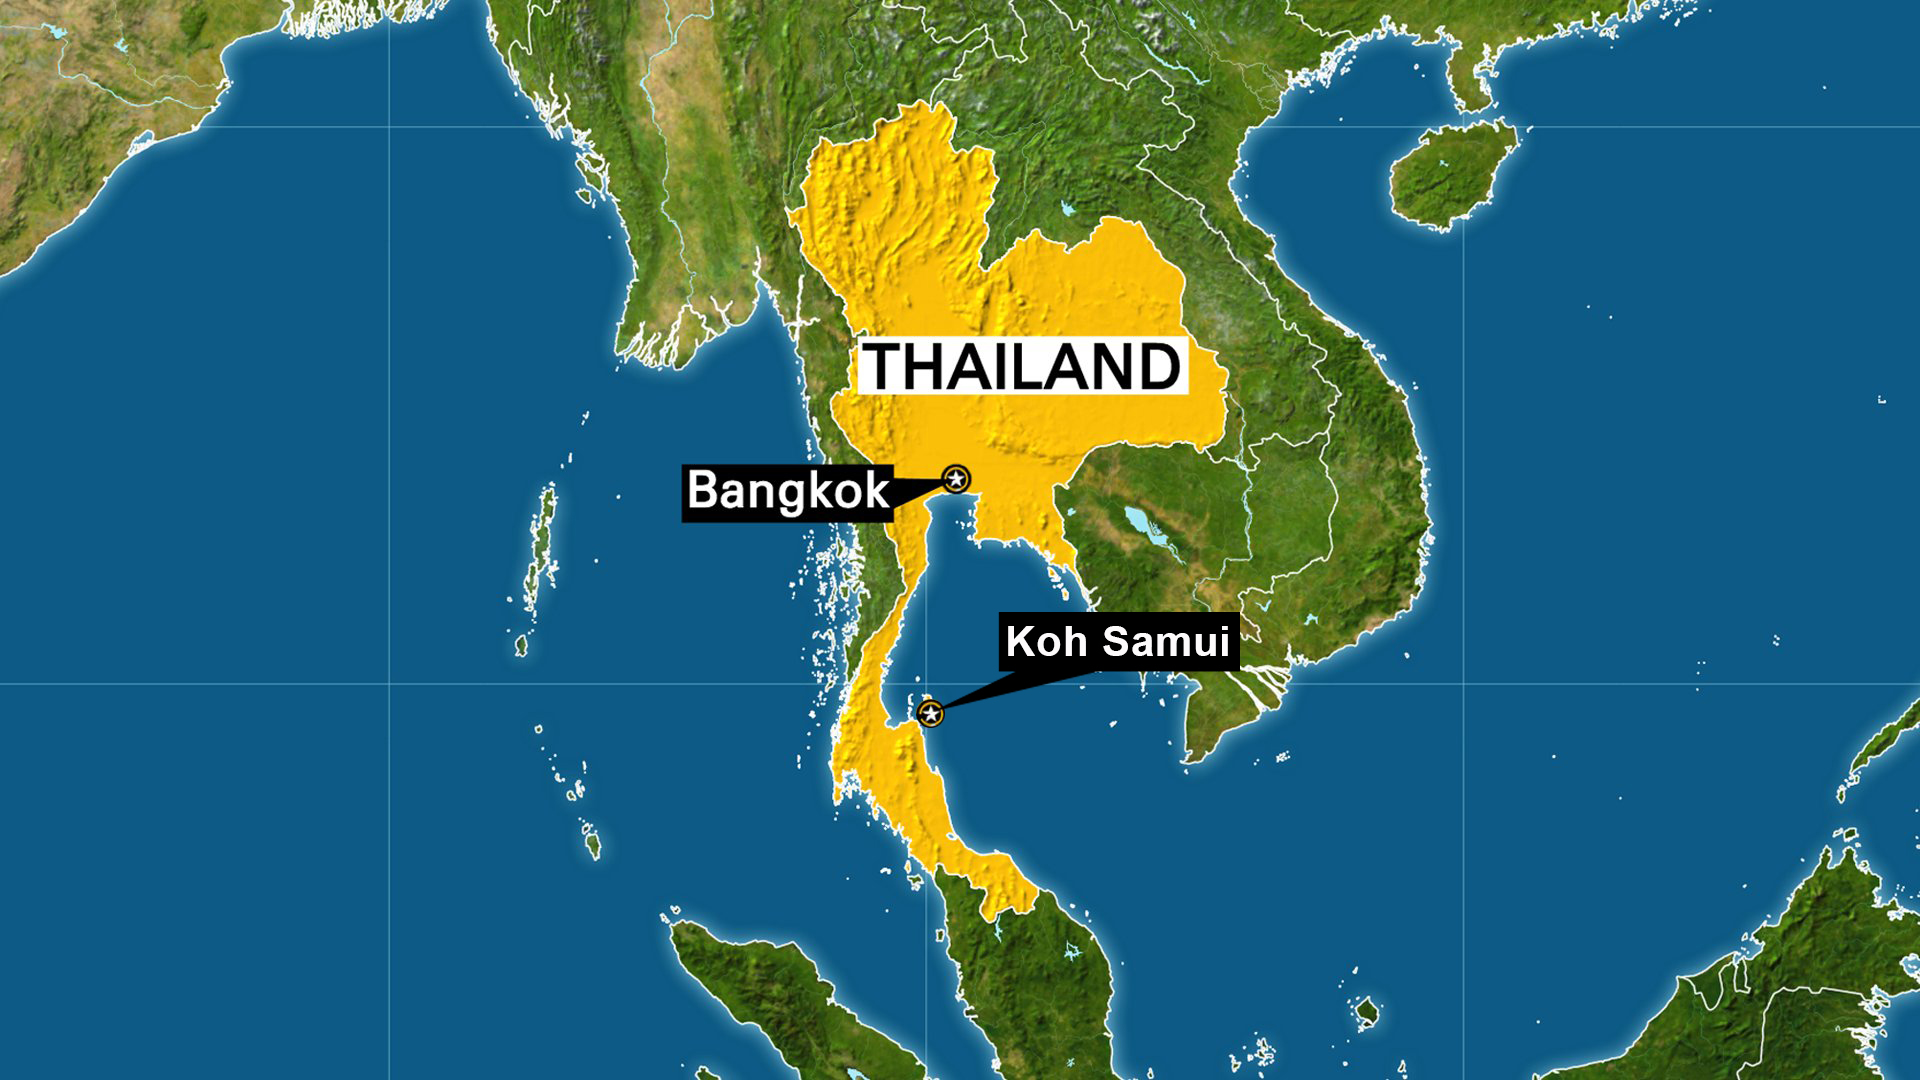 GUIDE DE L'ACHETEUR POUR ACHETER OU VIVRE EN THAILANDE